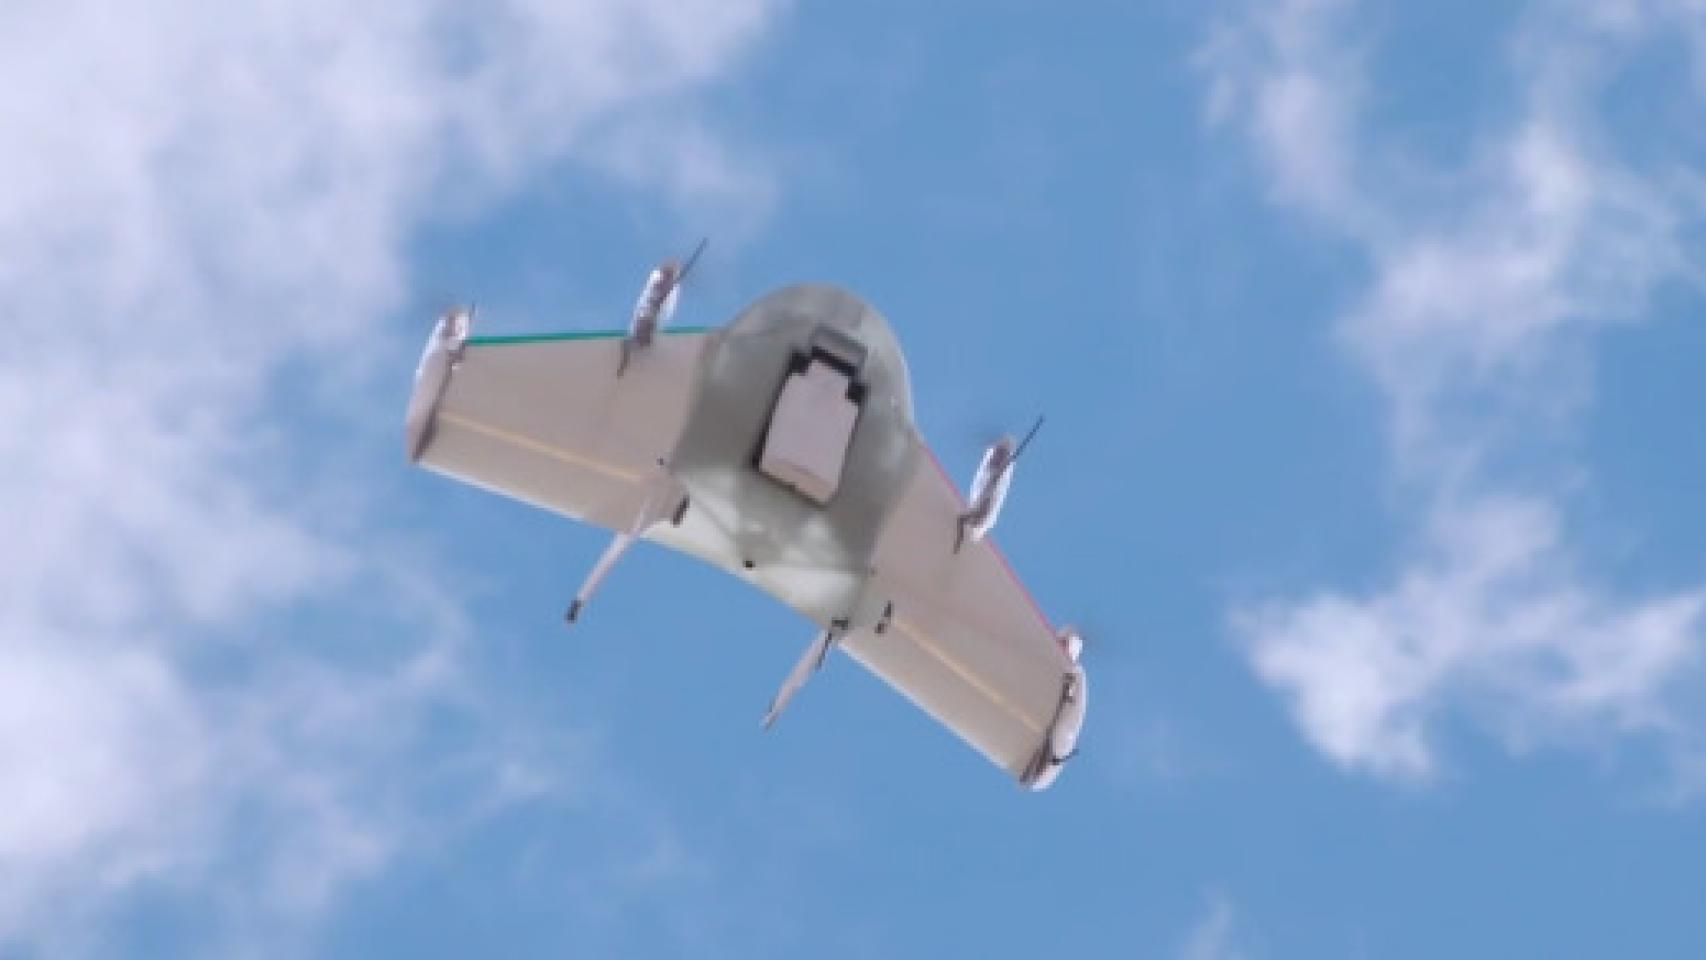 Google presenta Project Wing, el servicio de Drones transportadores